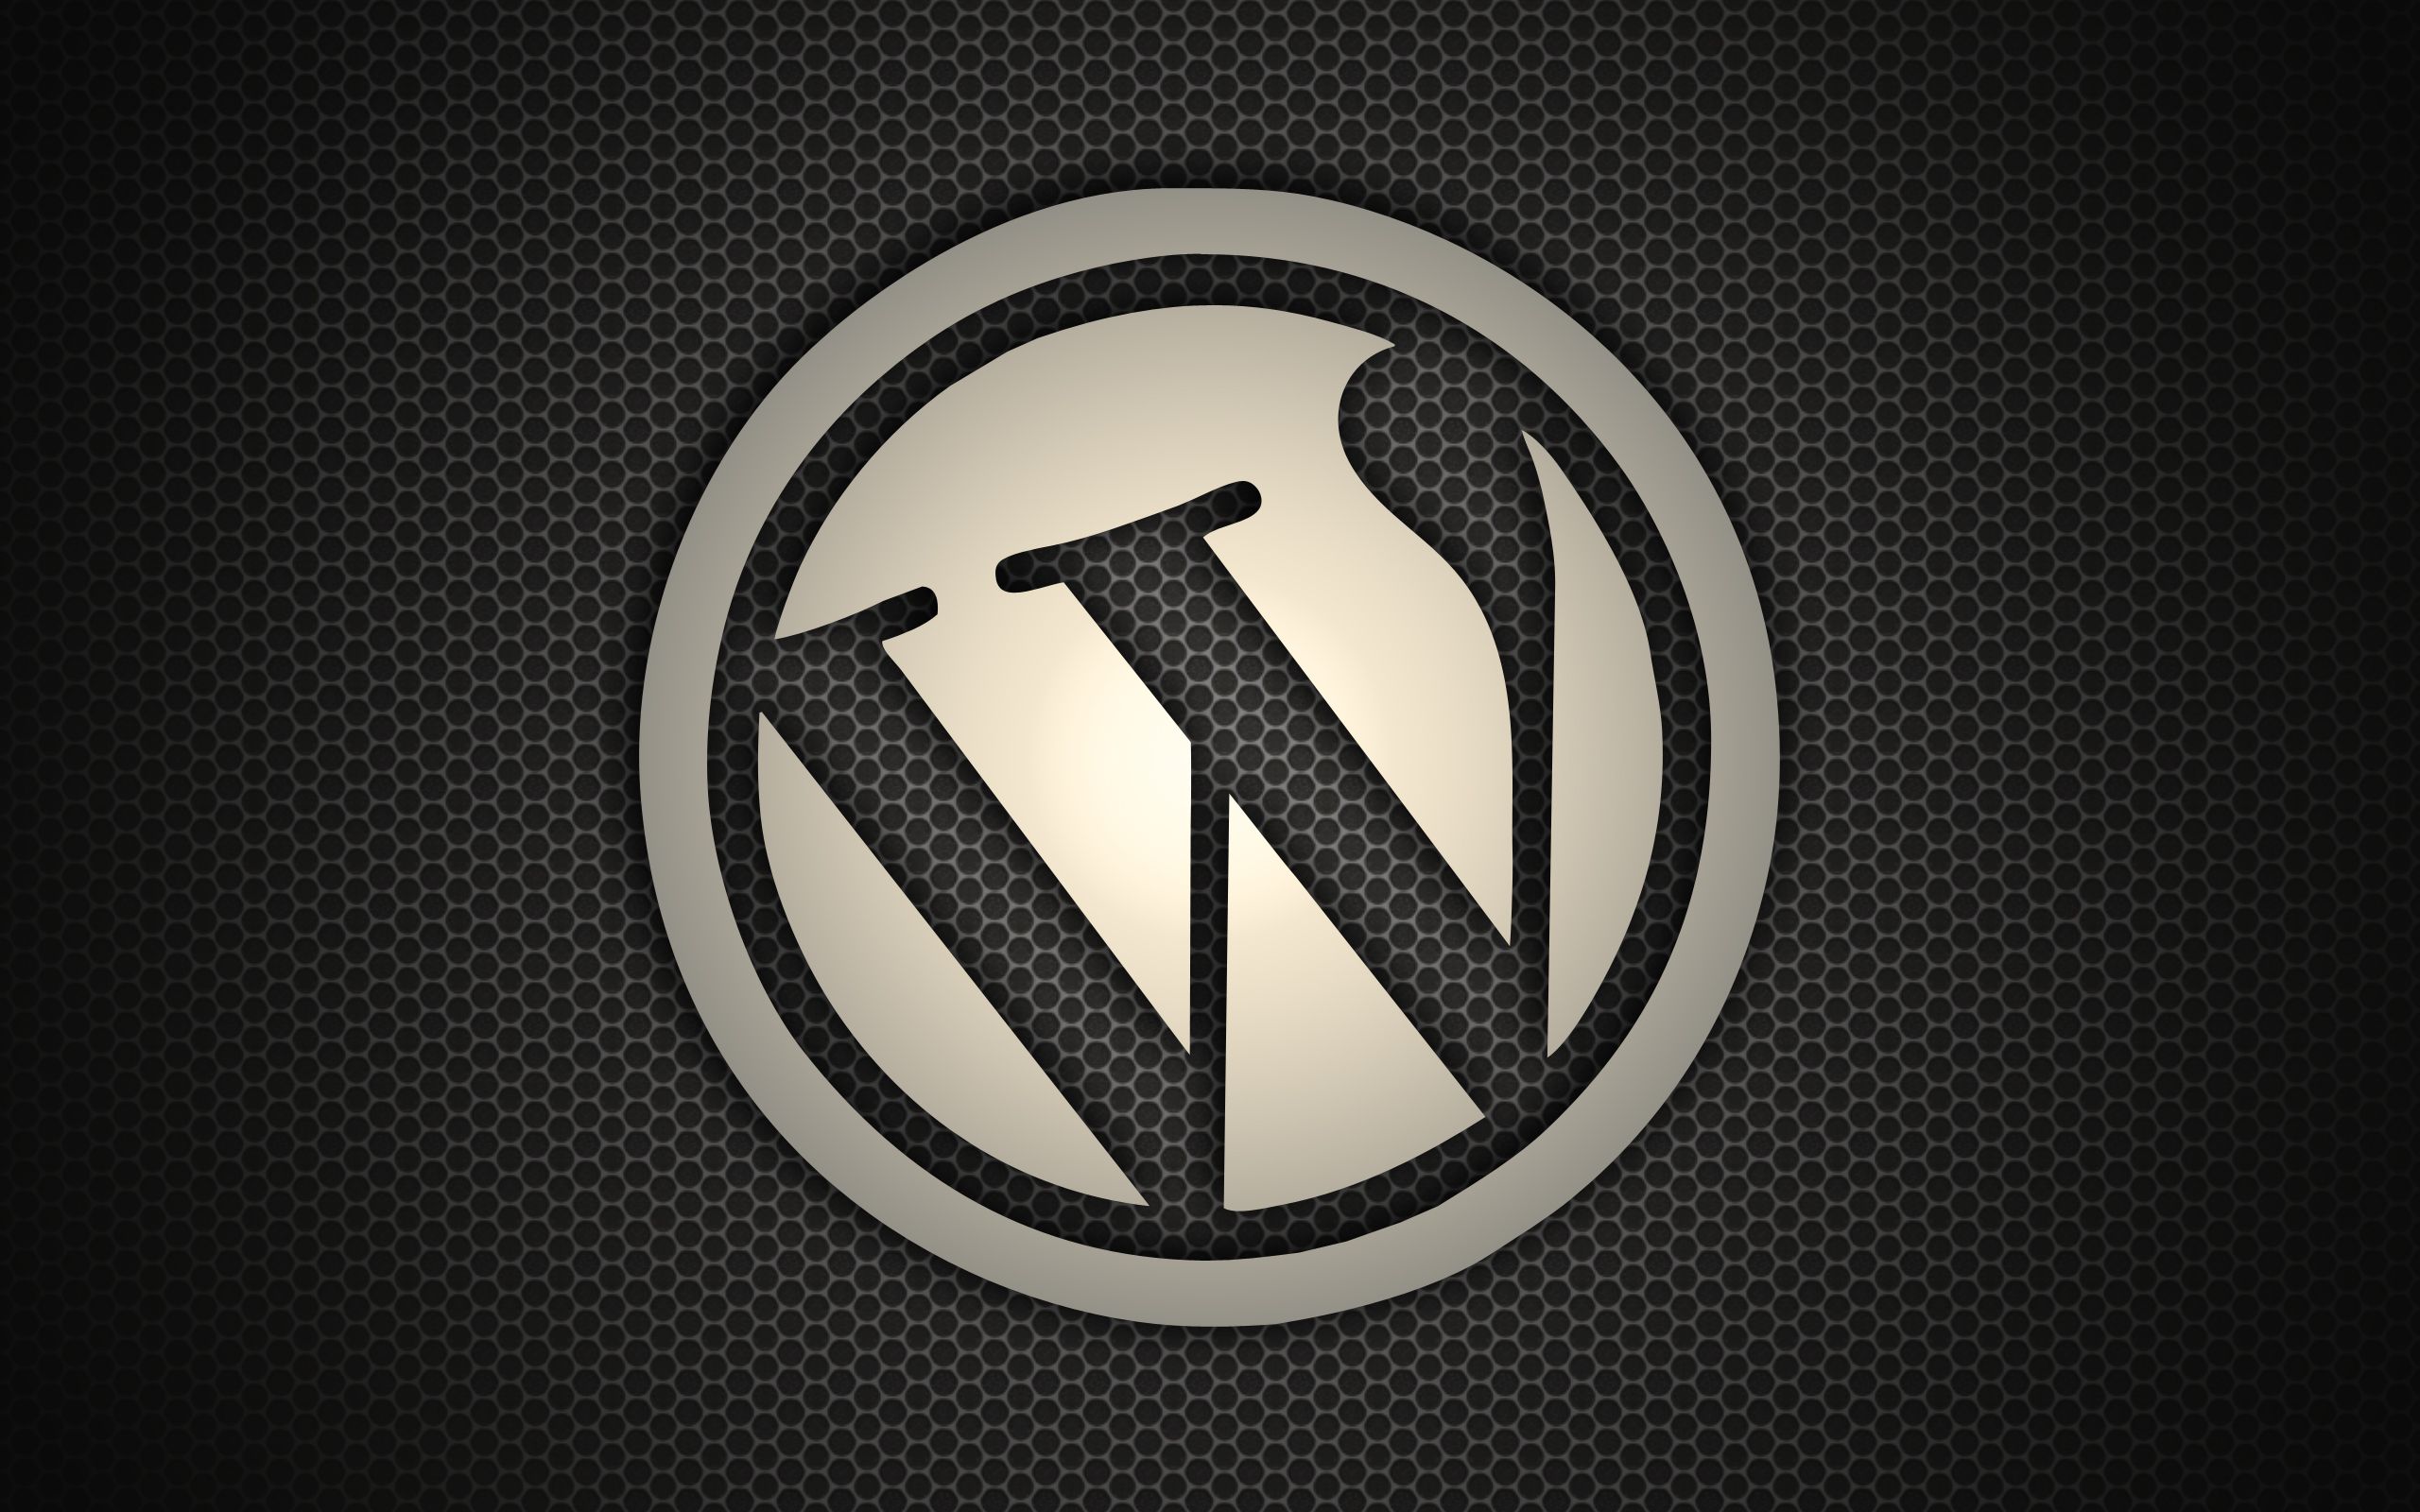 WordPress Background. WordPress Background, Peach WordPress Background and WordPress Wallpaper